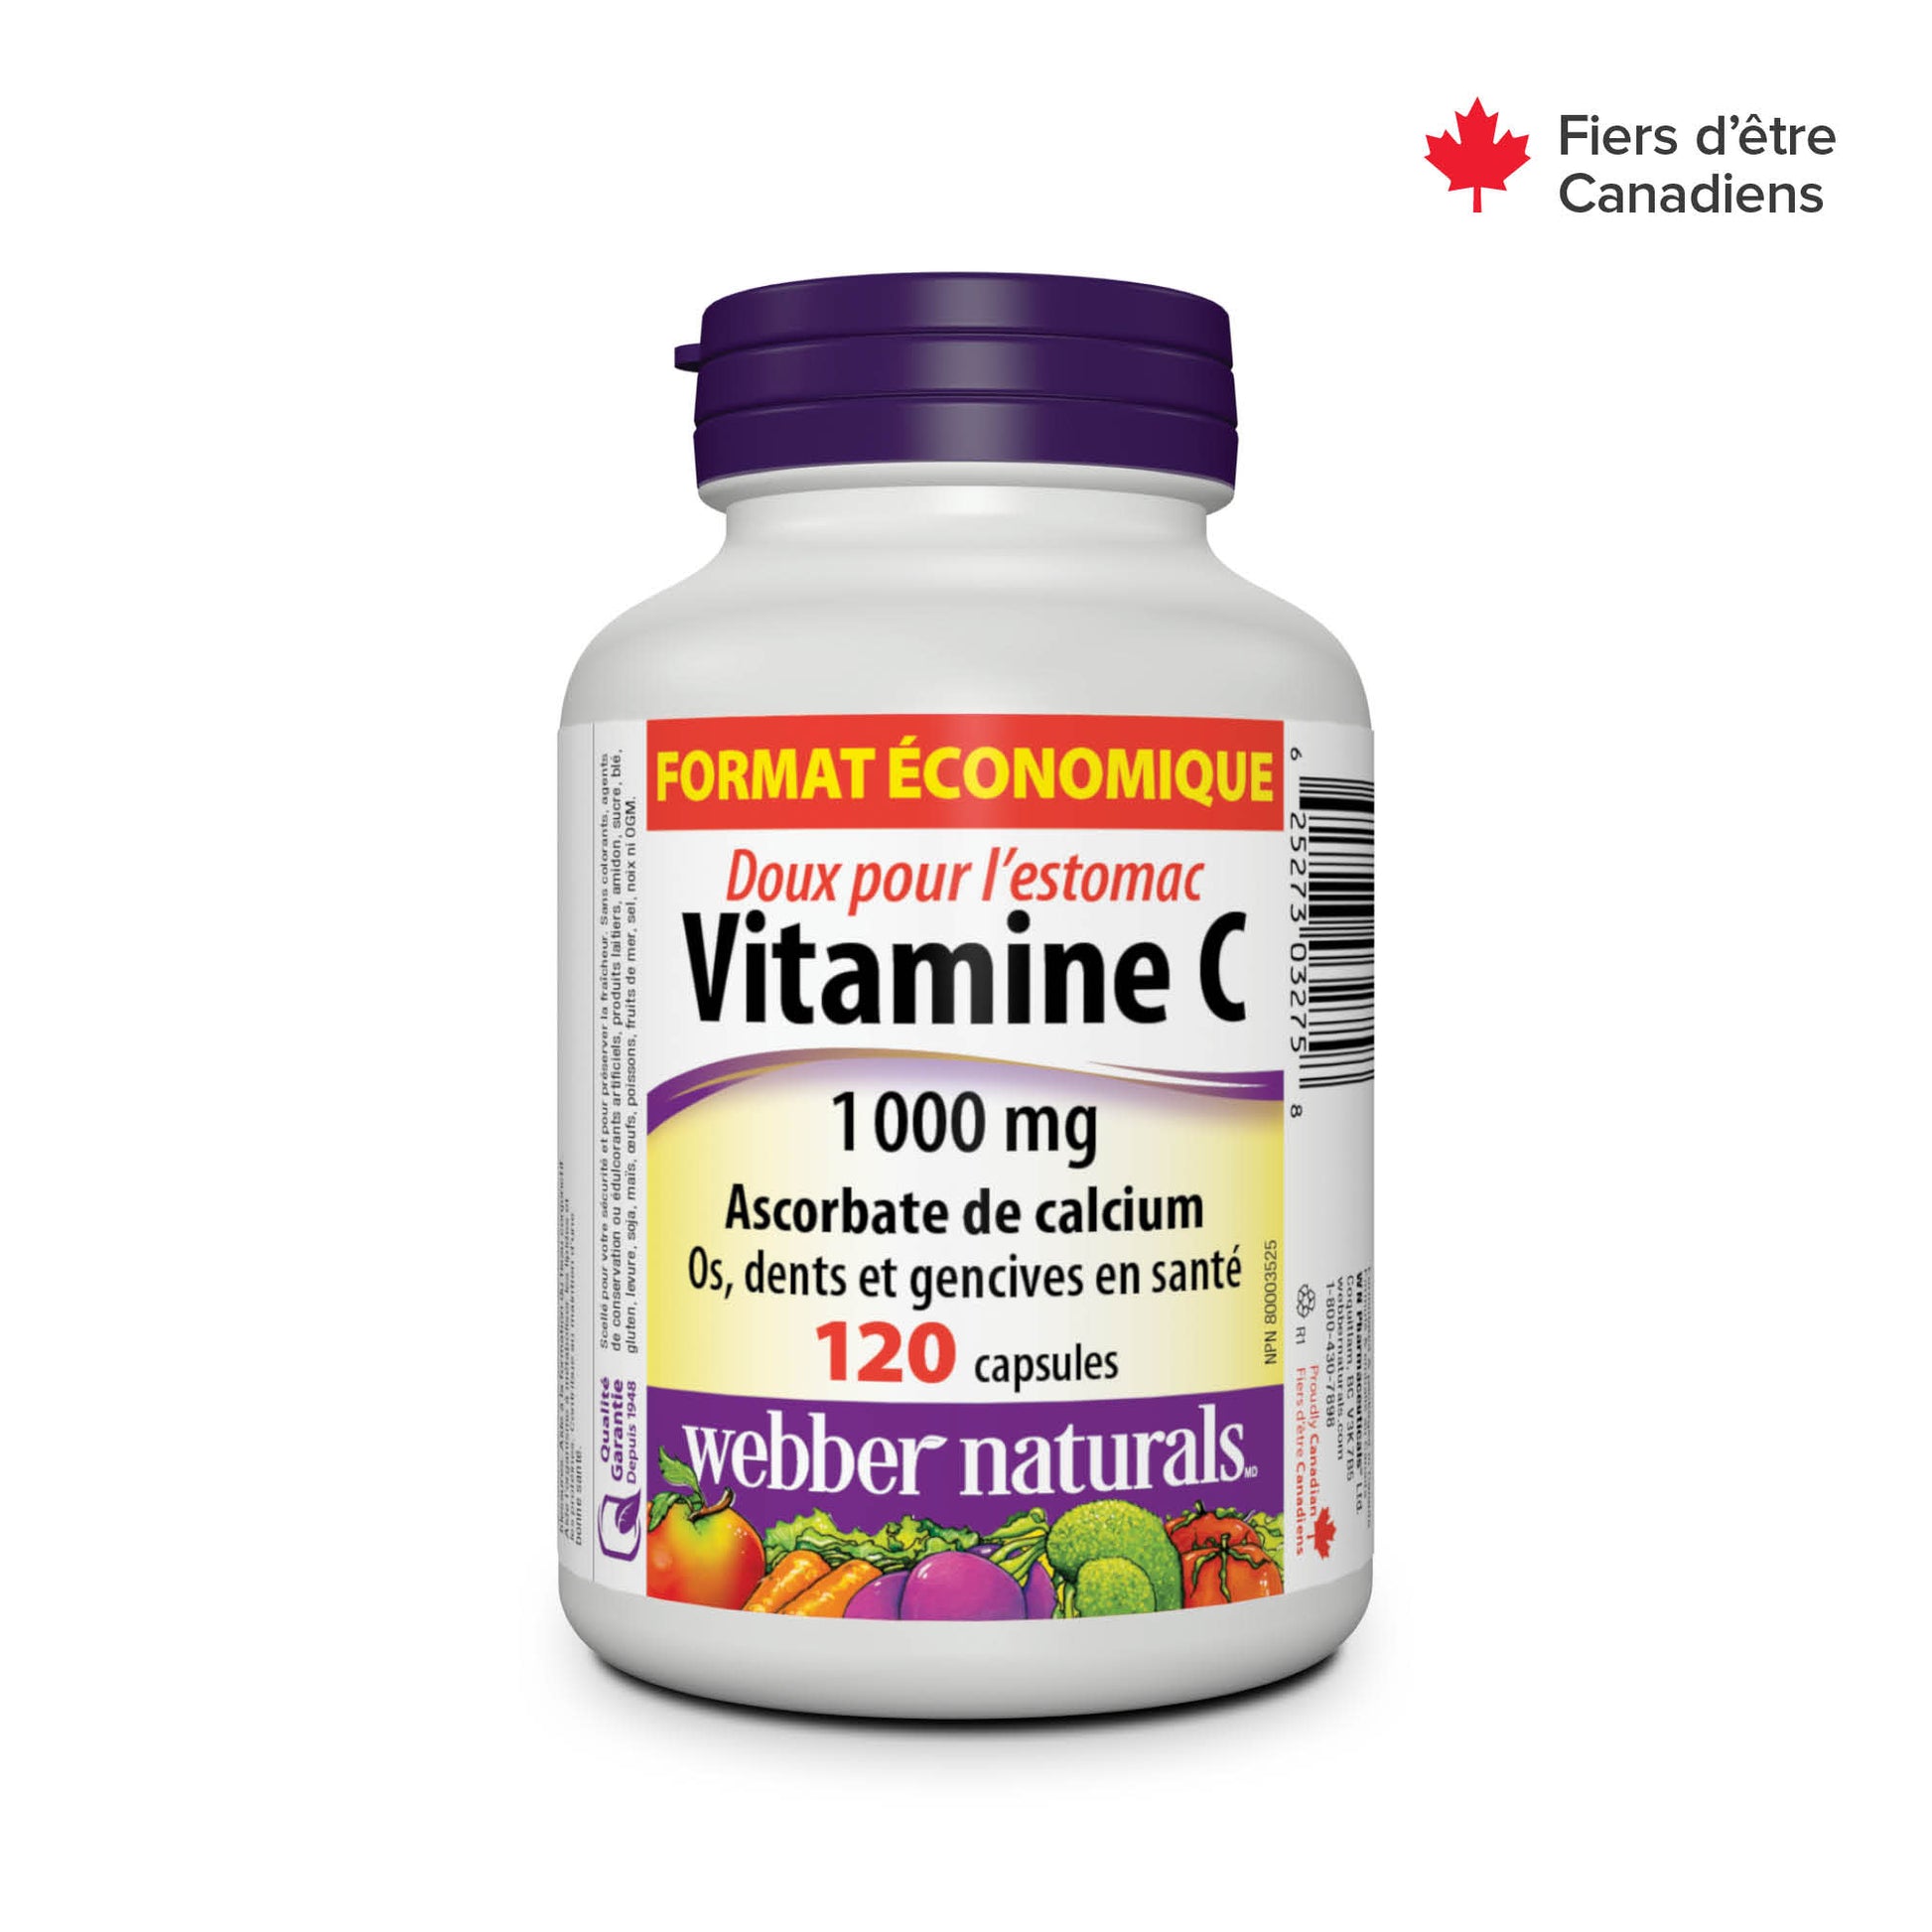 Vitamine C ascorbate de calcium doux pour l'estomac 1 000 mg for Webber Naturals|v|hi-res|WN3275